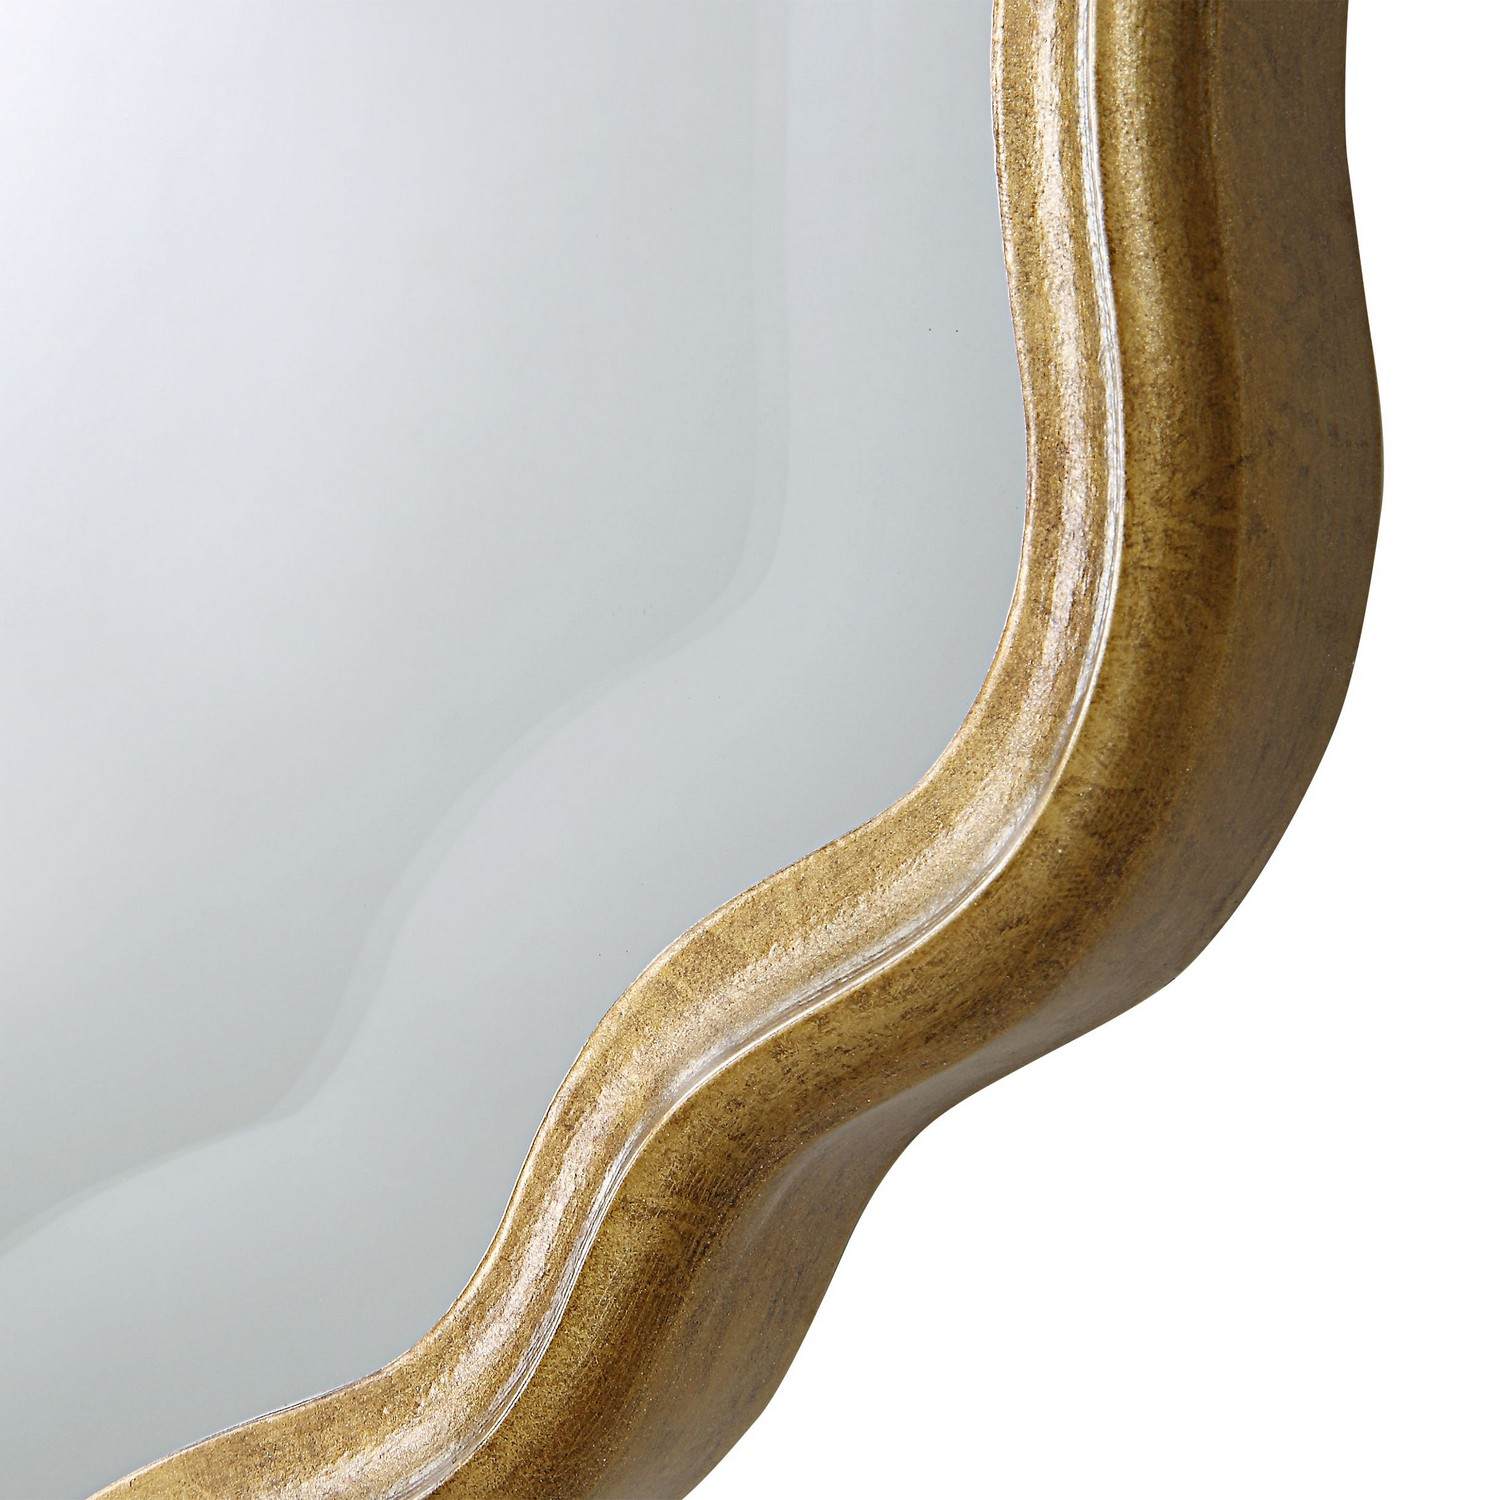 Uttermost W00525 Mirror - Gold/Amber Glaze